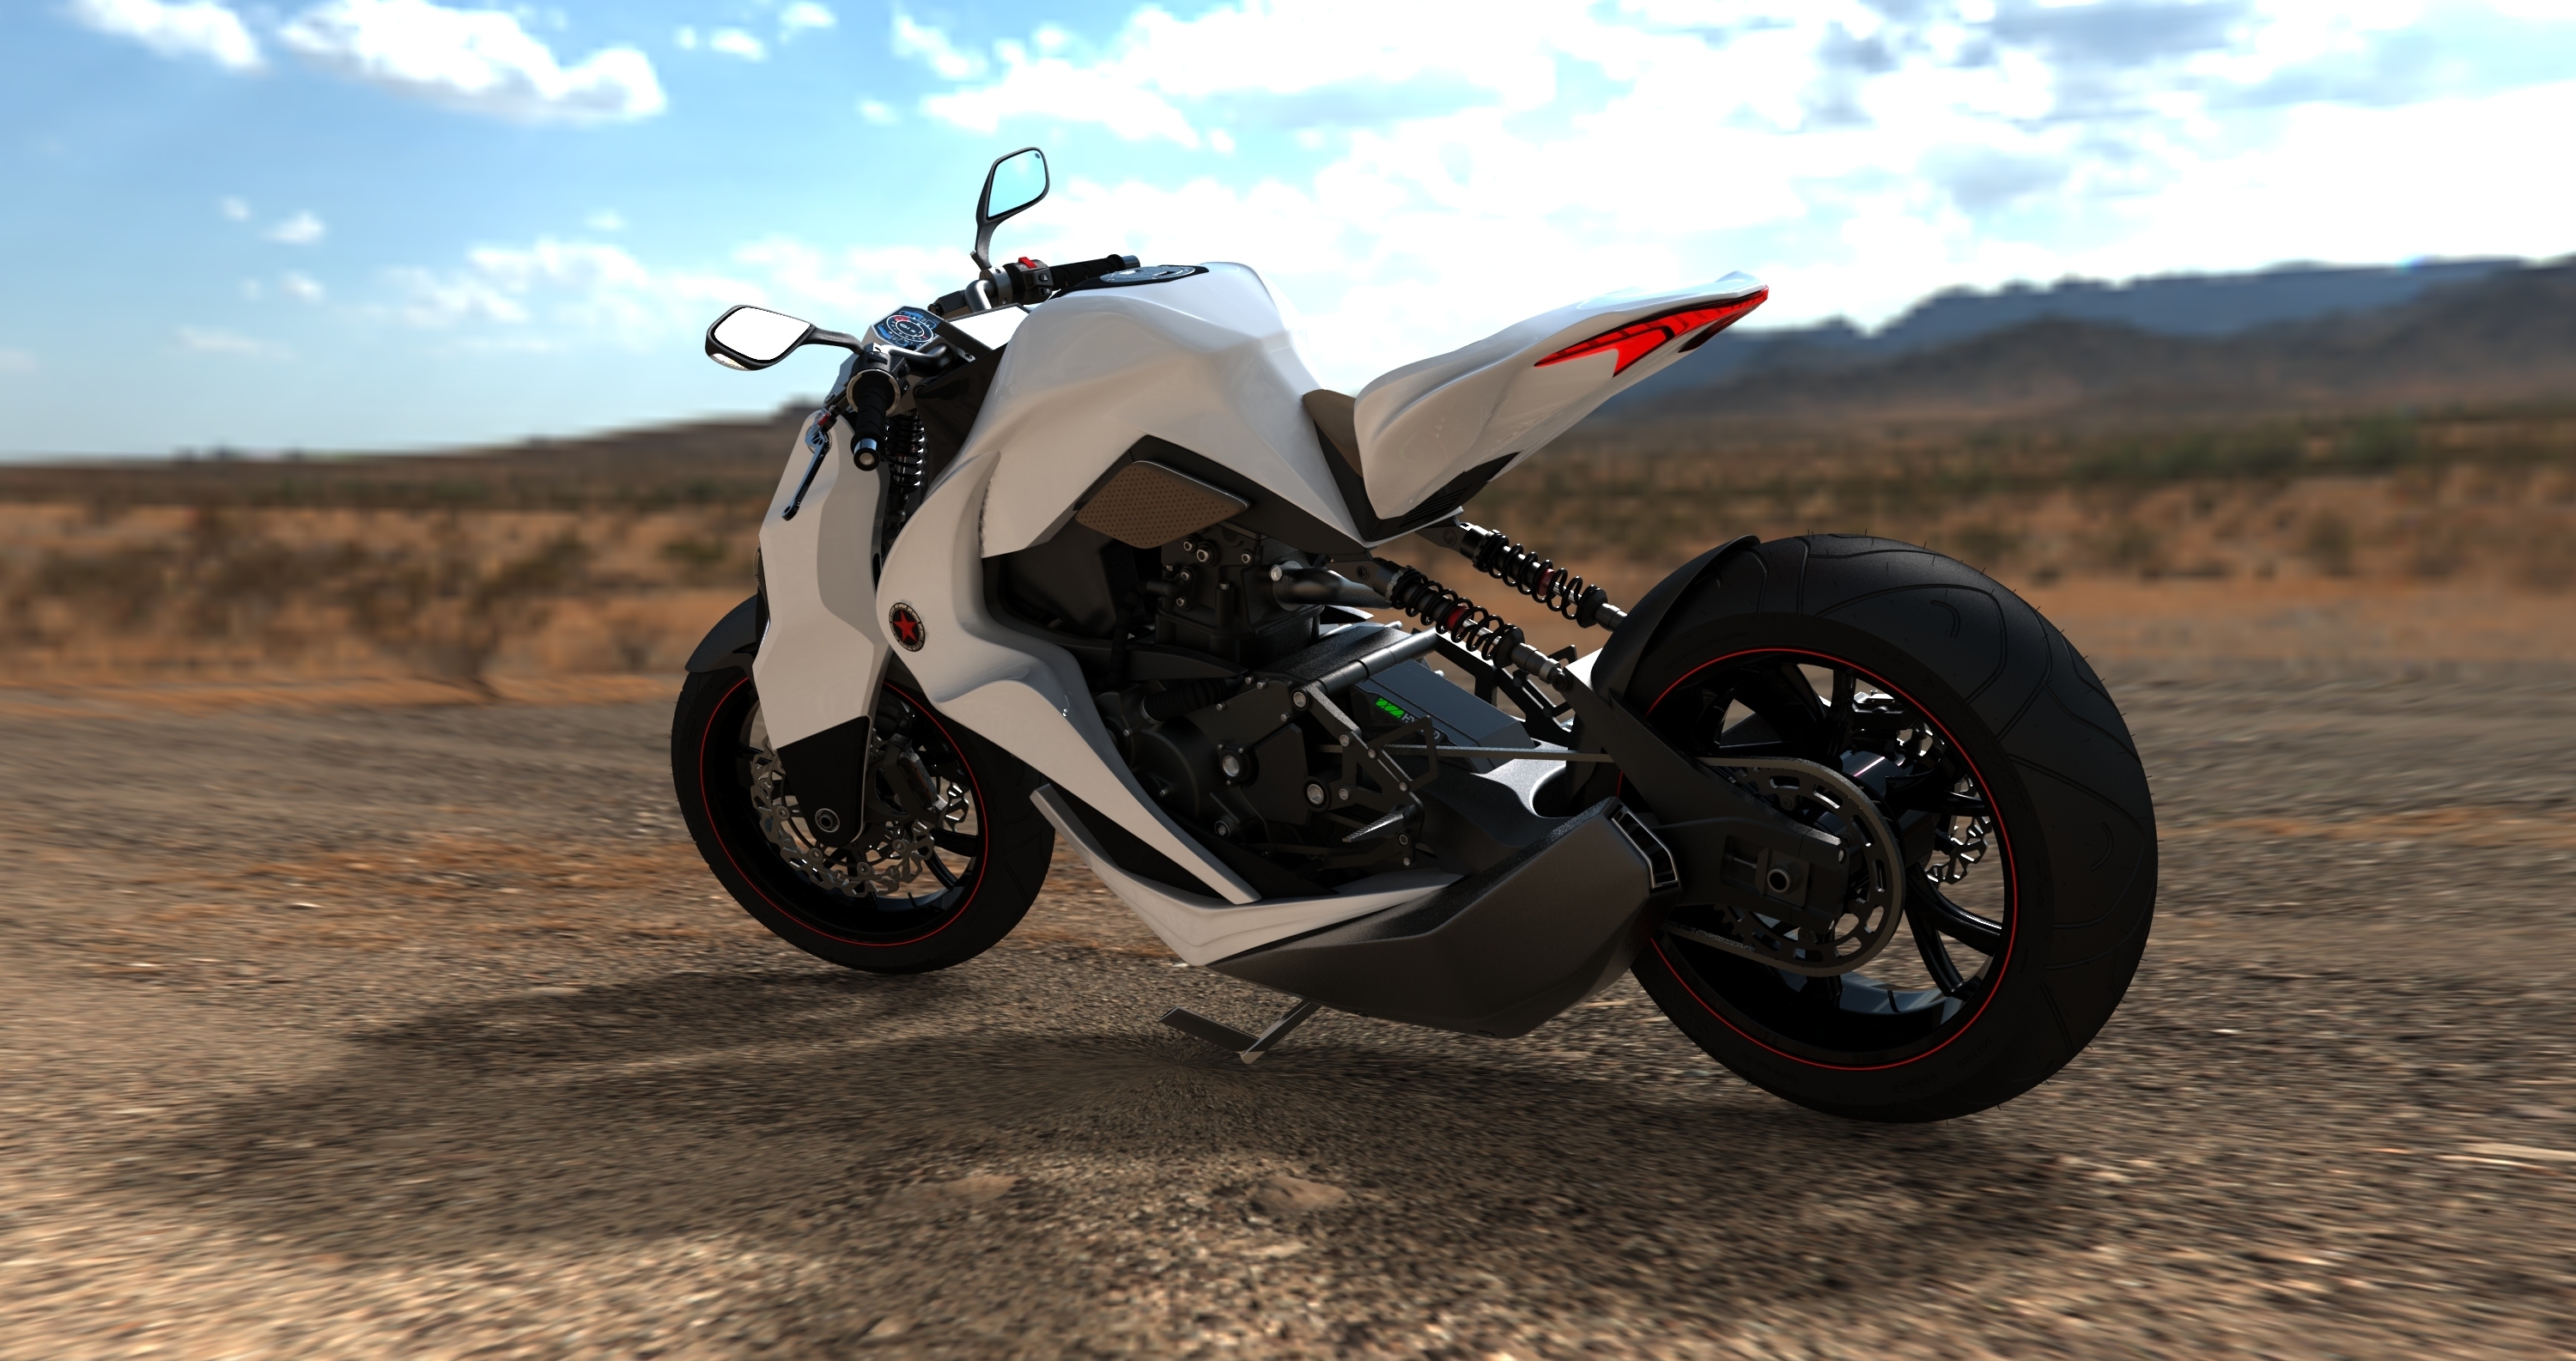 Descarga gratuita de fondo de pantalla para móvil de Motocicletas, Motocicleta, Vehículos.